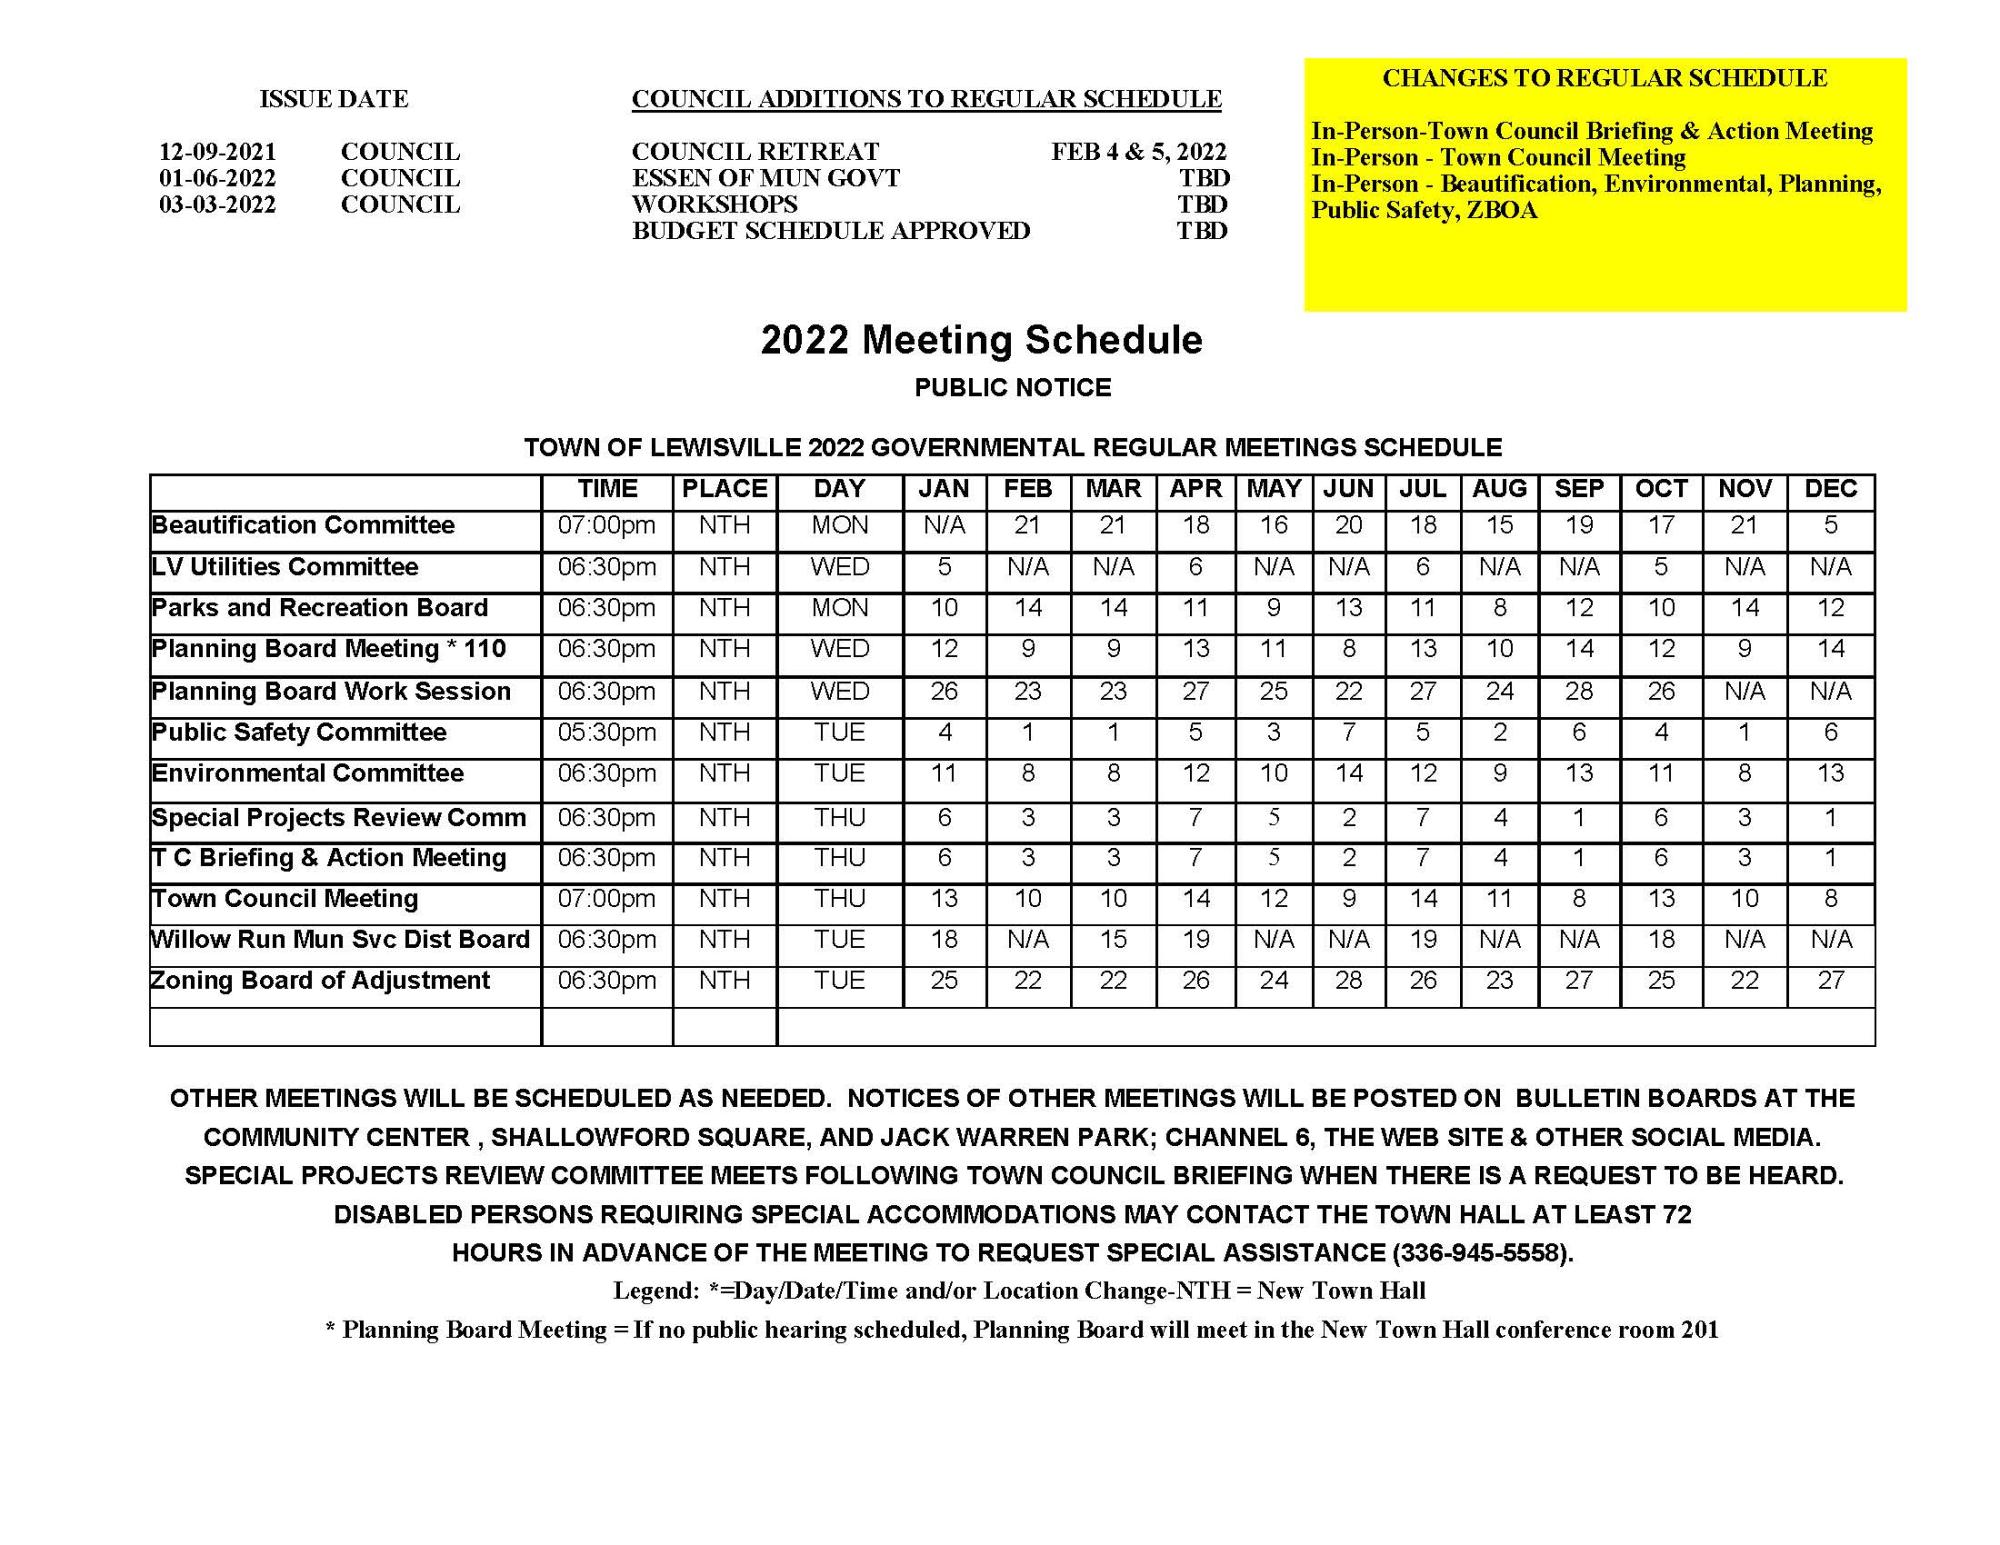 2022 Meetings Schedule